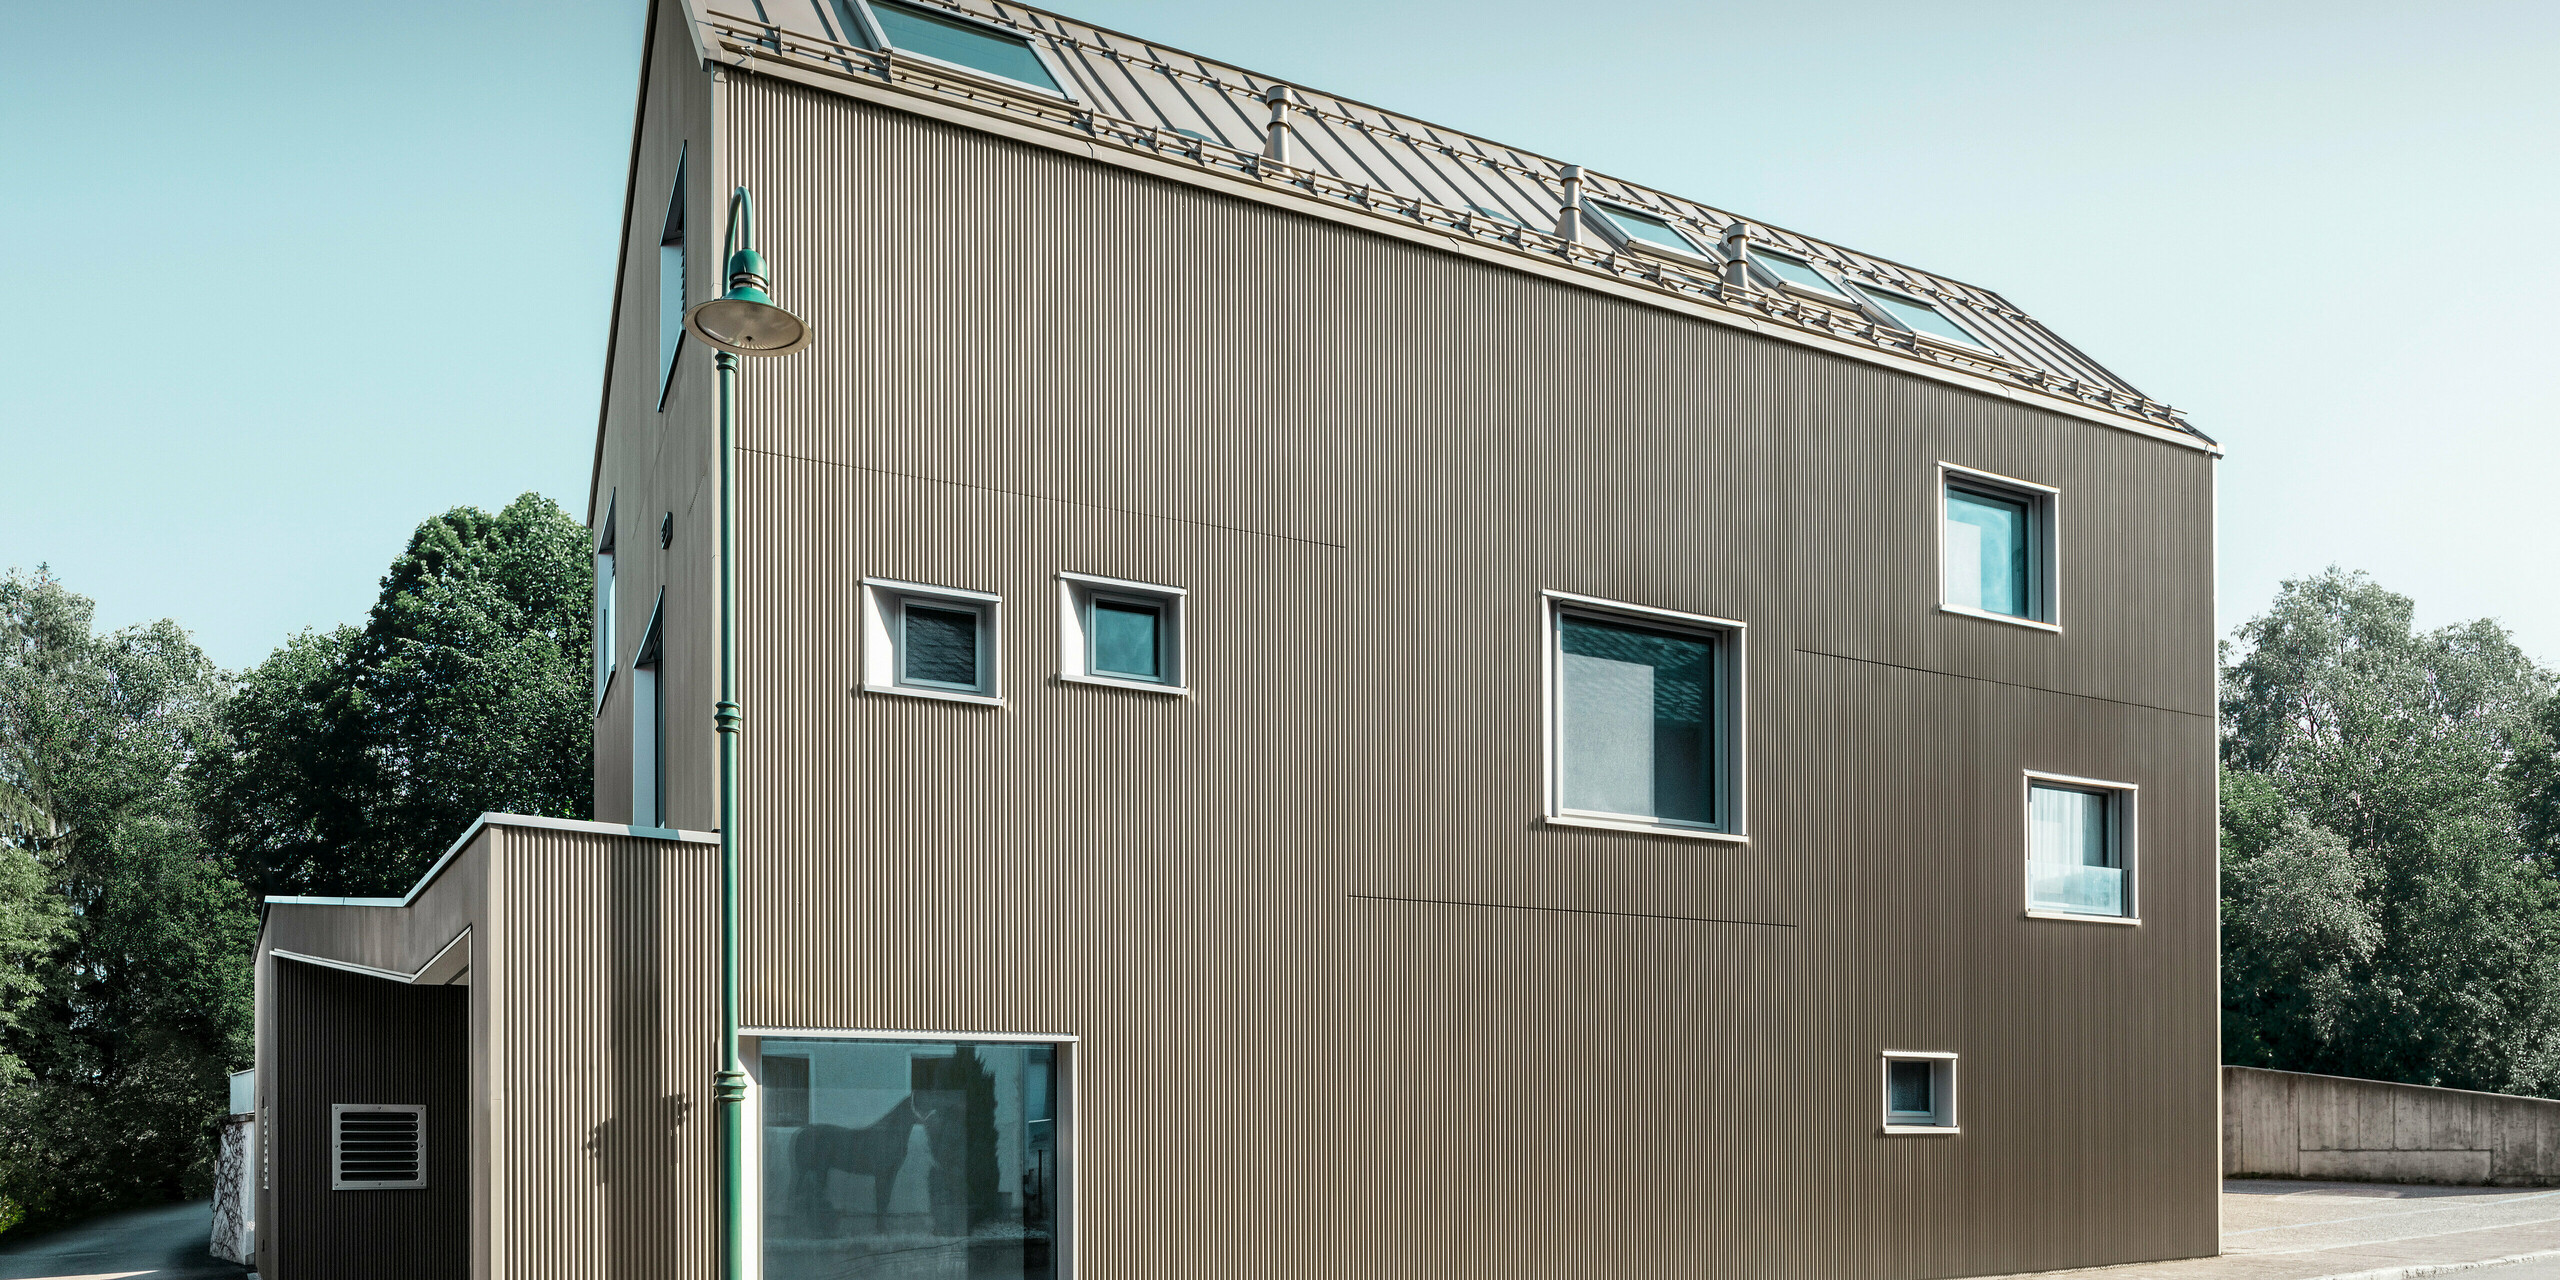 Blick von der Straße auf ein zweistöckiges Einfamilienhaus in Frankenburg, Österreich, gekennzeichnet durch ein PREFA Komplettsystem. Das Dach wurde mit PREFALZ in Bronze eingedeckt.. Die Fassade präsentiert sich in einer subtilen Textur, die durch die vertikalen Linien des Zackenprofils entsteht und ein harmonisches Schattenspiel erzeugt. Das Haus besitzt eine asymmetrische Fensteranordnung, die den modernen und unkonventionellen Charakter des Designs betont. Der Anbau auf der linken Seite ist stilistisch an das Hauptgebäude angelehnt, wodurch ein stimmiges Gesamtbild entsteht. Die klaren, sauberen Linien der Architektur kontrastieren wirkungsvoll mit dem blauen Himmel und den Bäumen im Hintergrund.